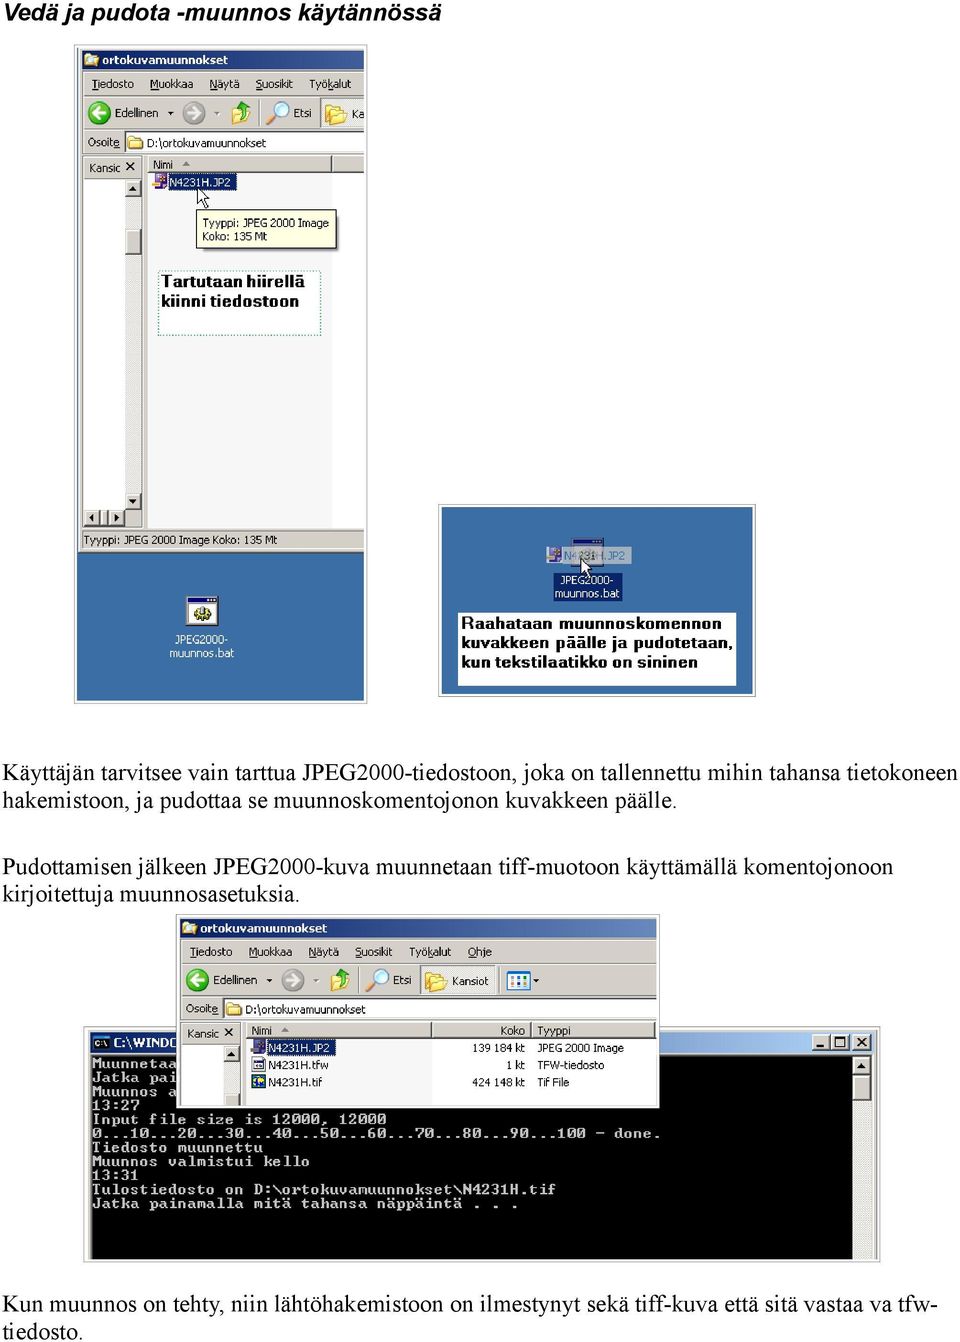 Pudottamisen jälkeen JPEG2000-kuva muunnetaan tiff-muotoon käyttämällä komentojonoon kirjoitettuja